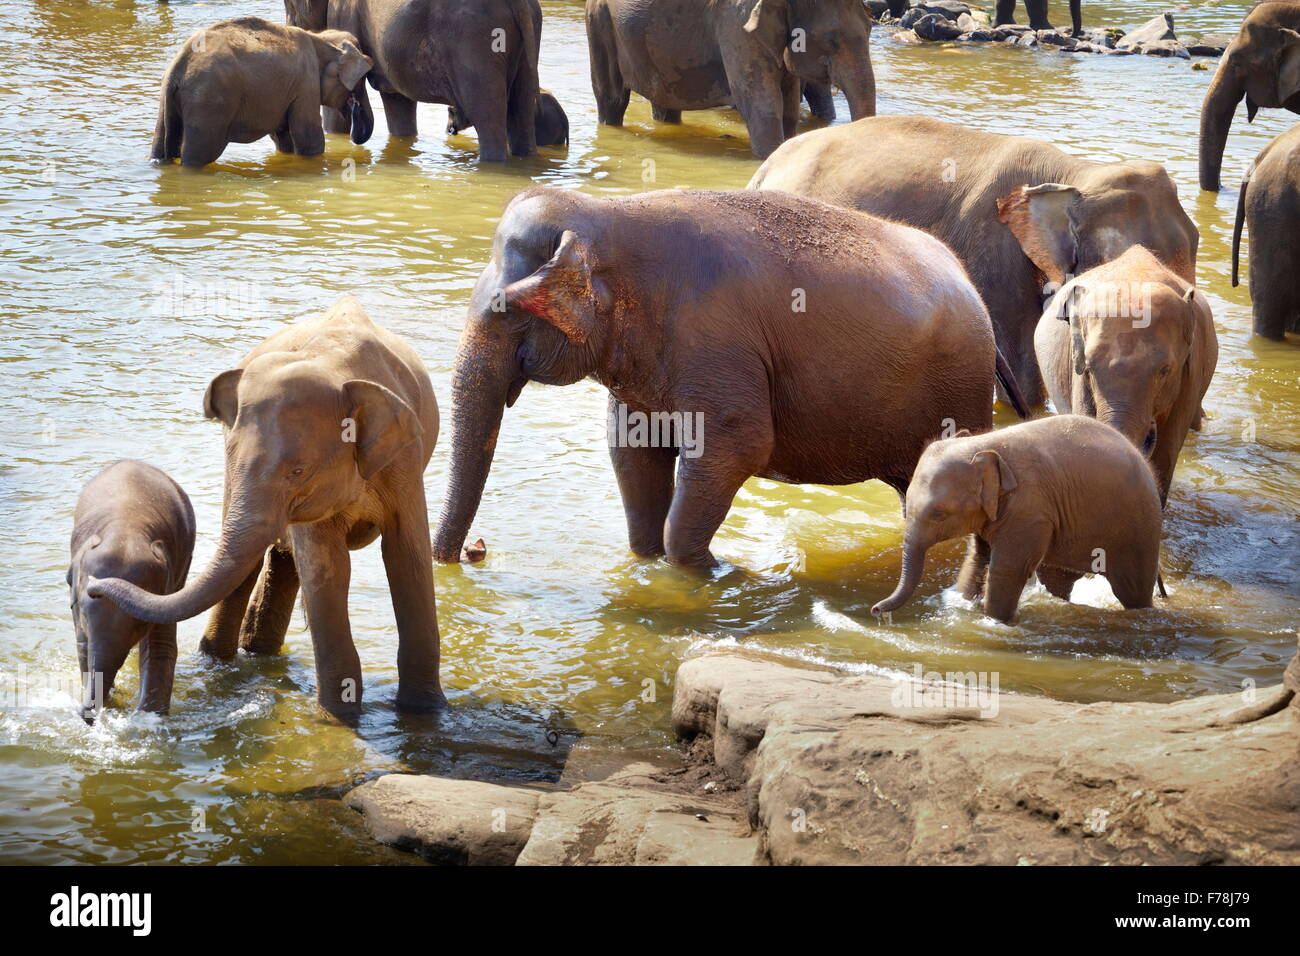 Les éléphants dans le bain - éléphant de Pinnawela orphelinat pour éléphants d'Asie sauvages, Sri Lanka Banque D'Images